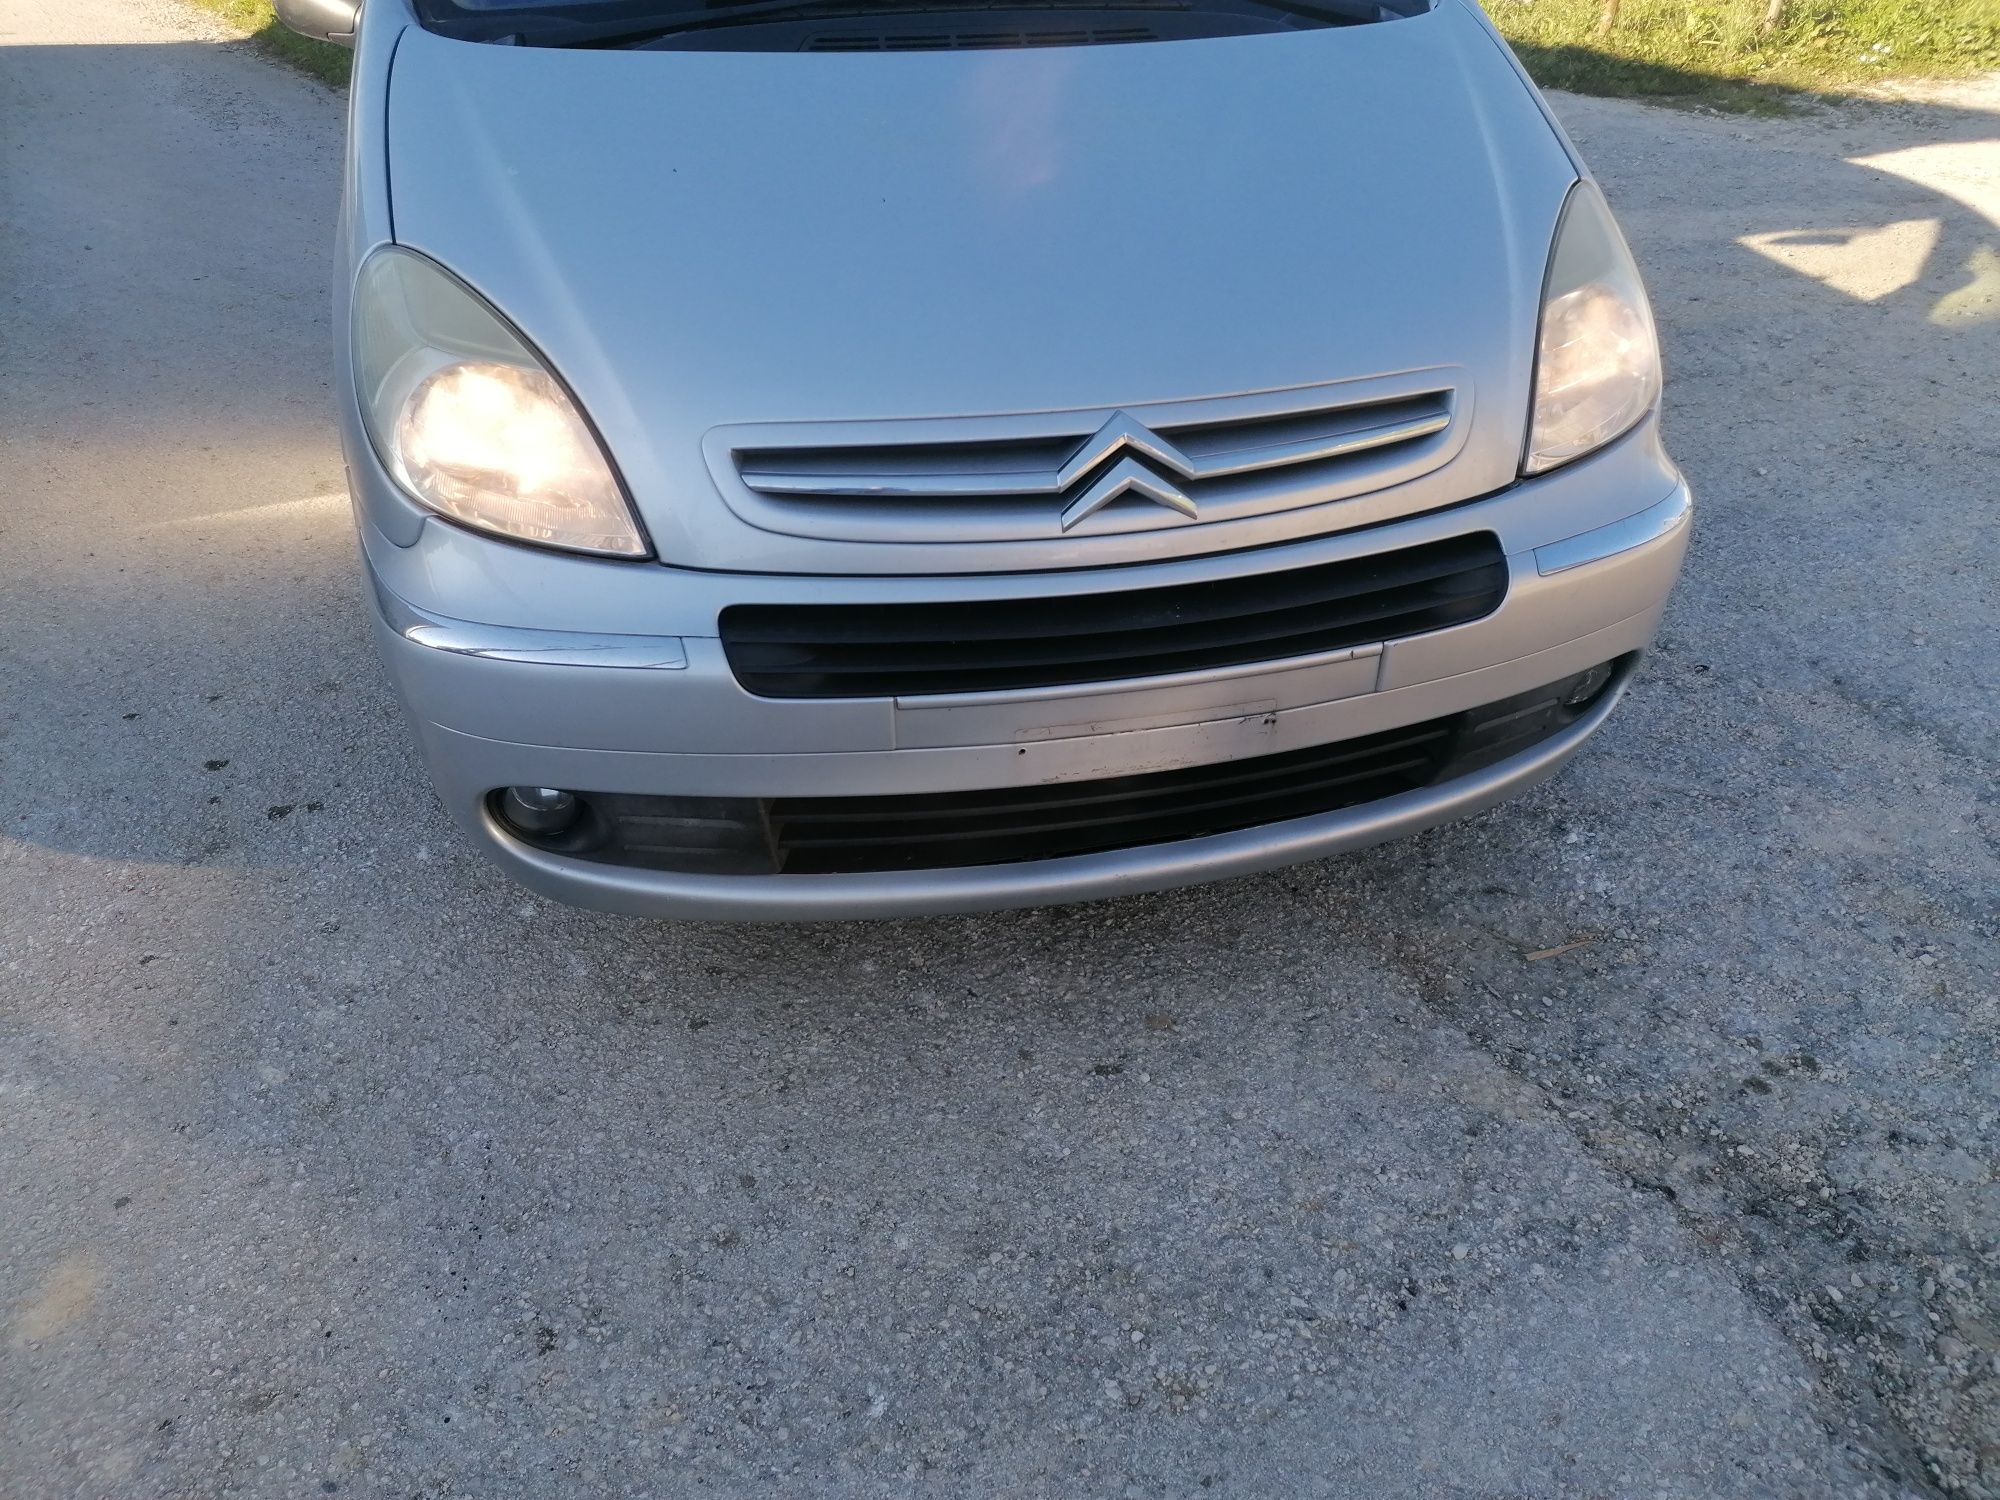 Frente completa Citroën xsara picasso exclusive